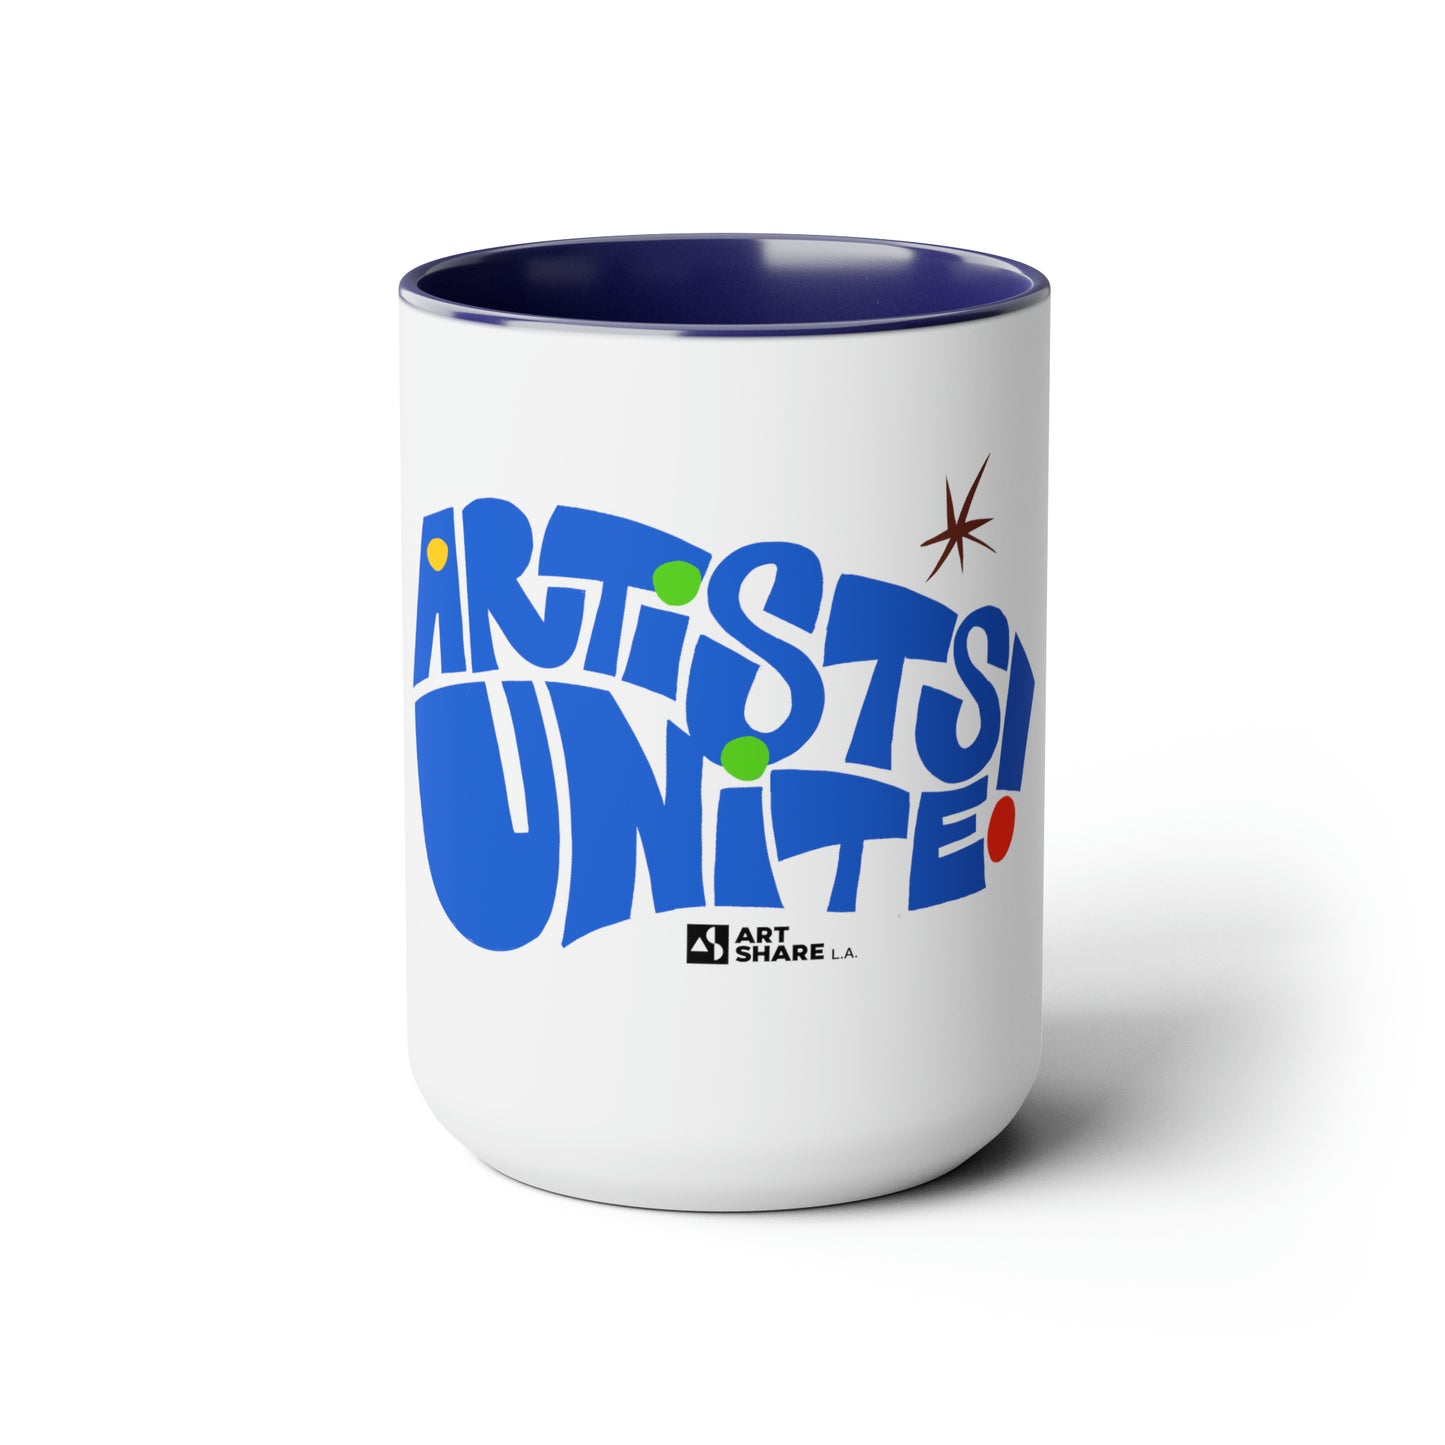 ARTISTS UNITE! Two-Tone Coffee Mugs, 15oz